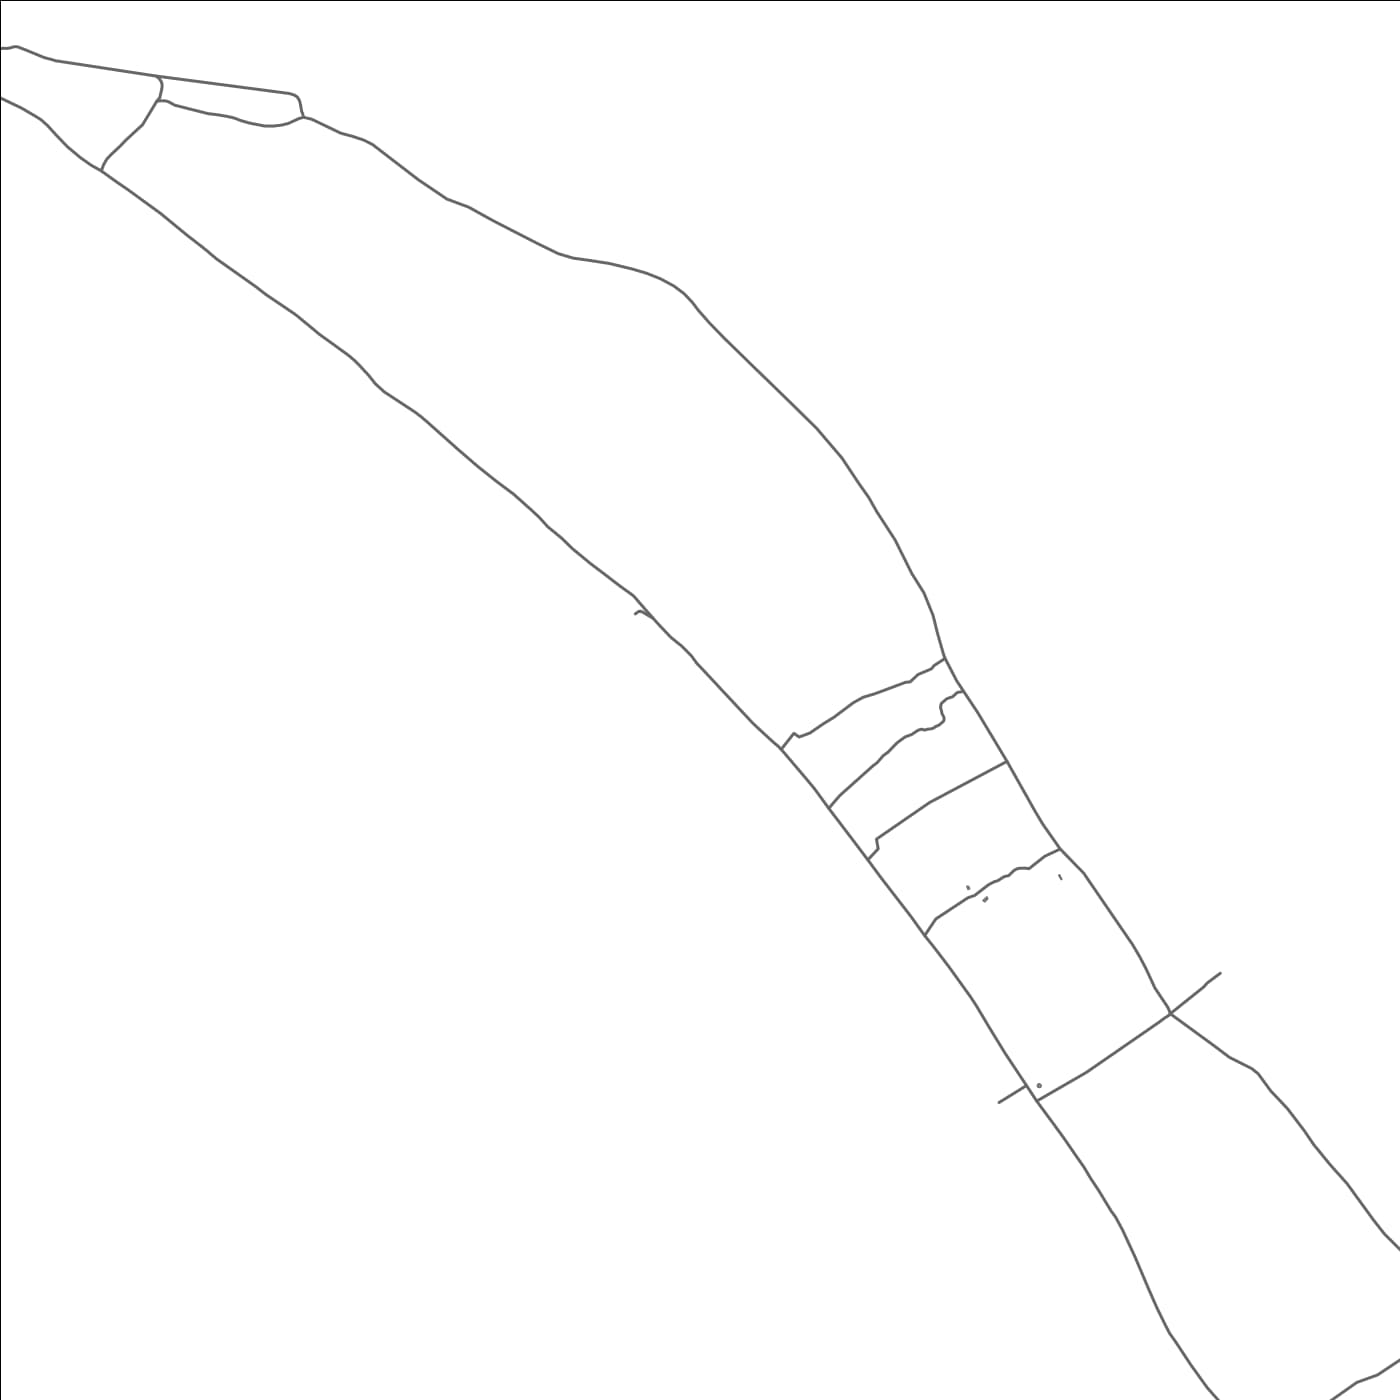 ROAD MAP OF NAIMOA, KIRIBATI BY MAPBAKES